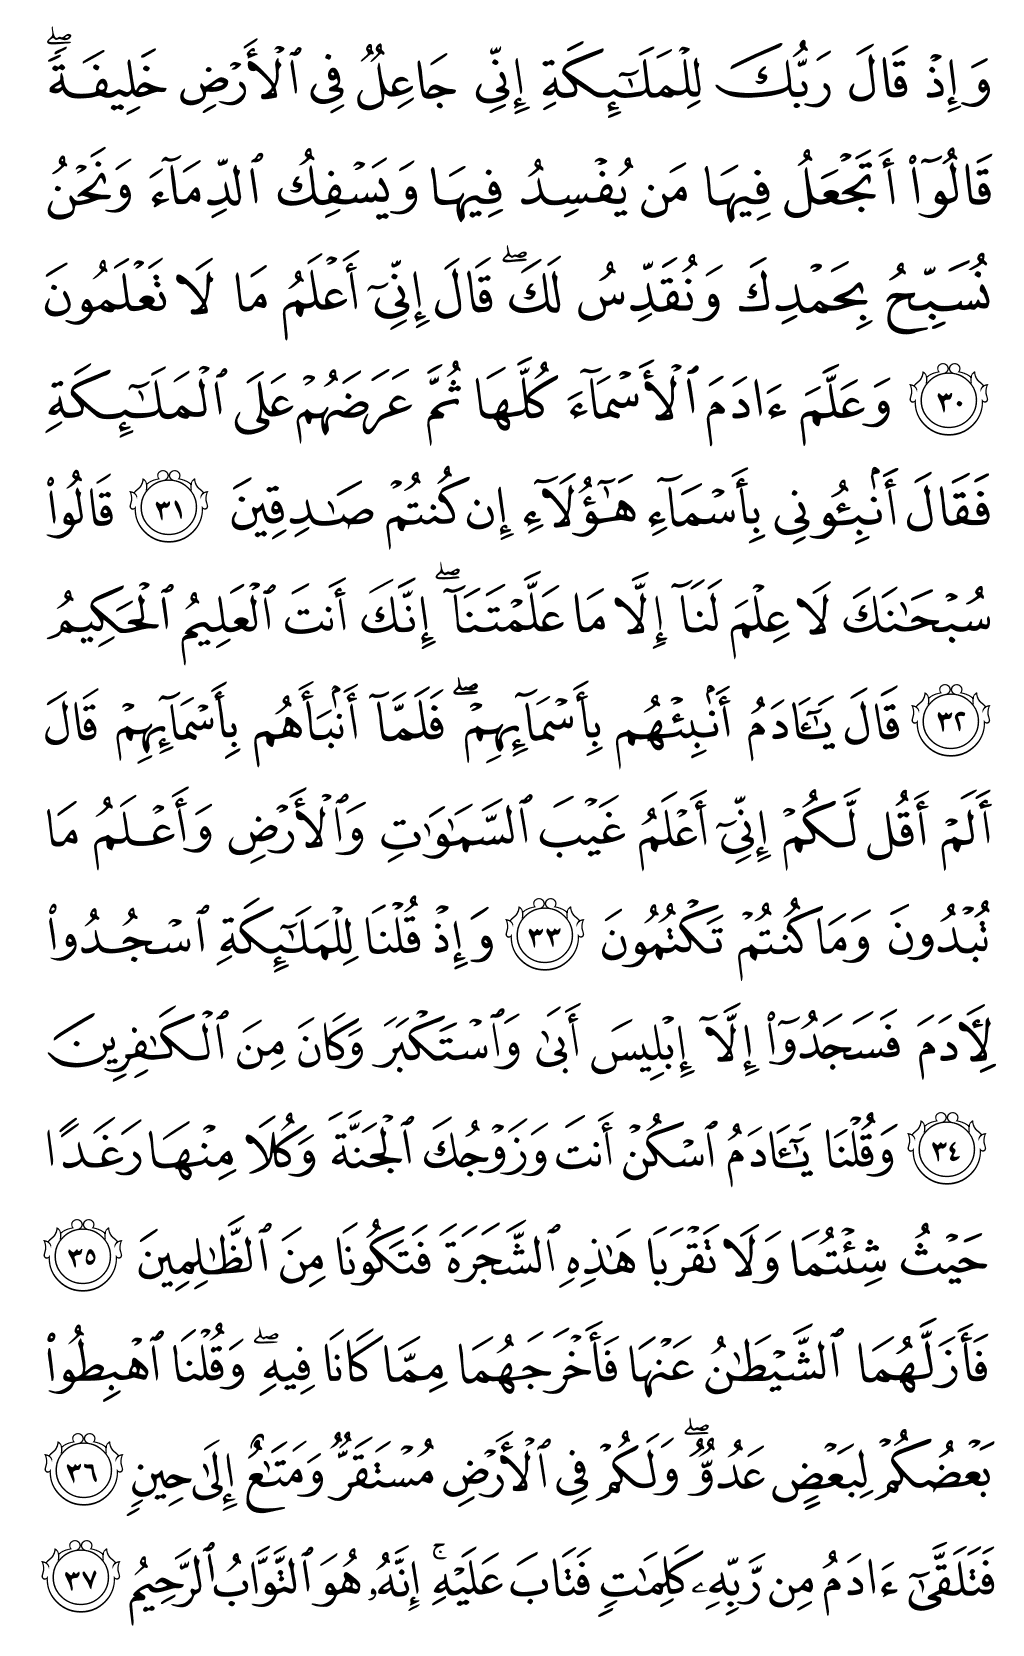 الصفحة رقم 6 من القرآن الكريم